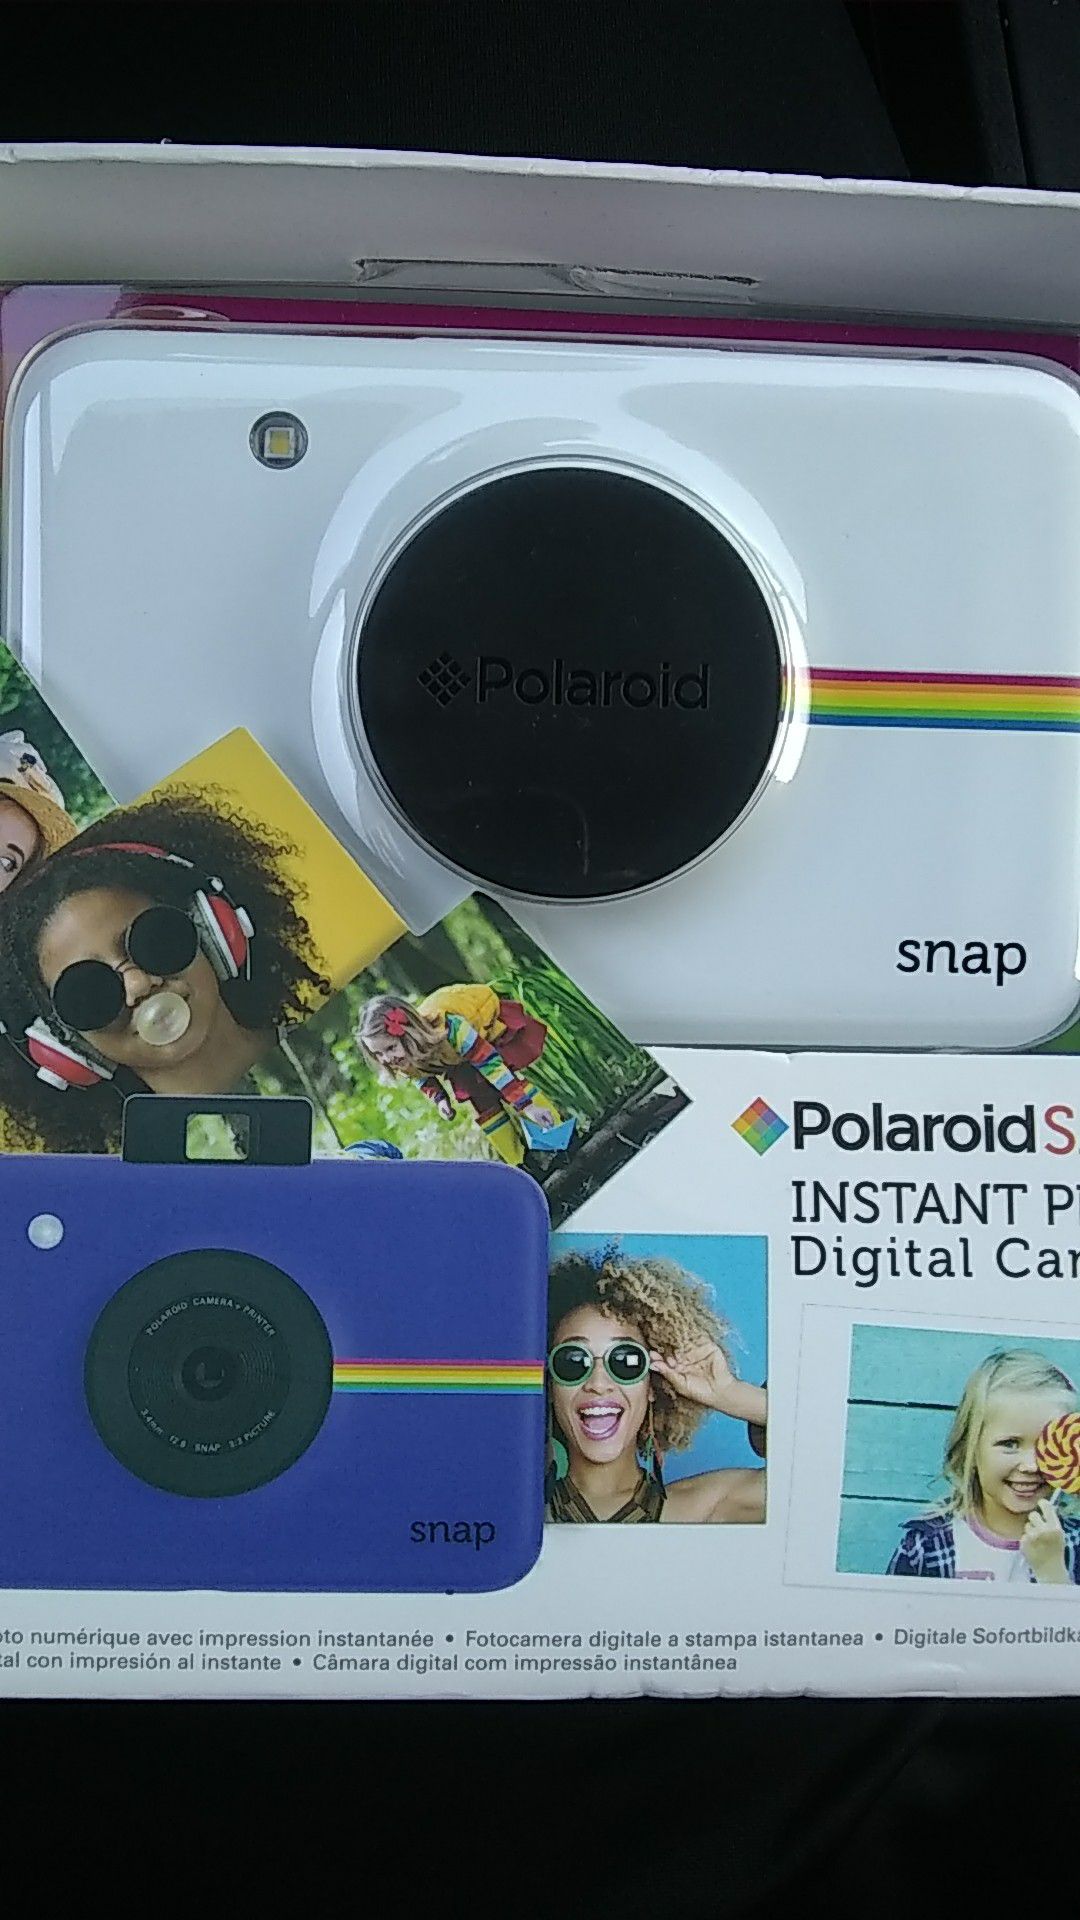 Brand new portable polaroid instant picture camera